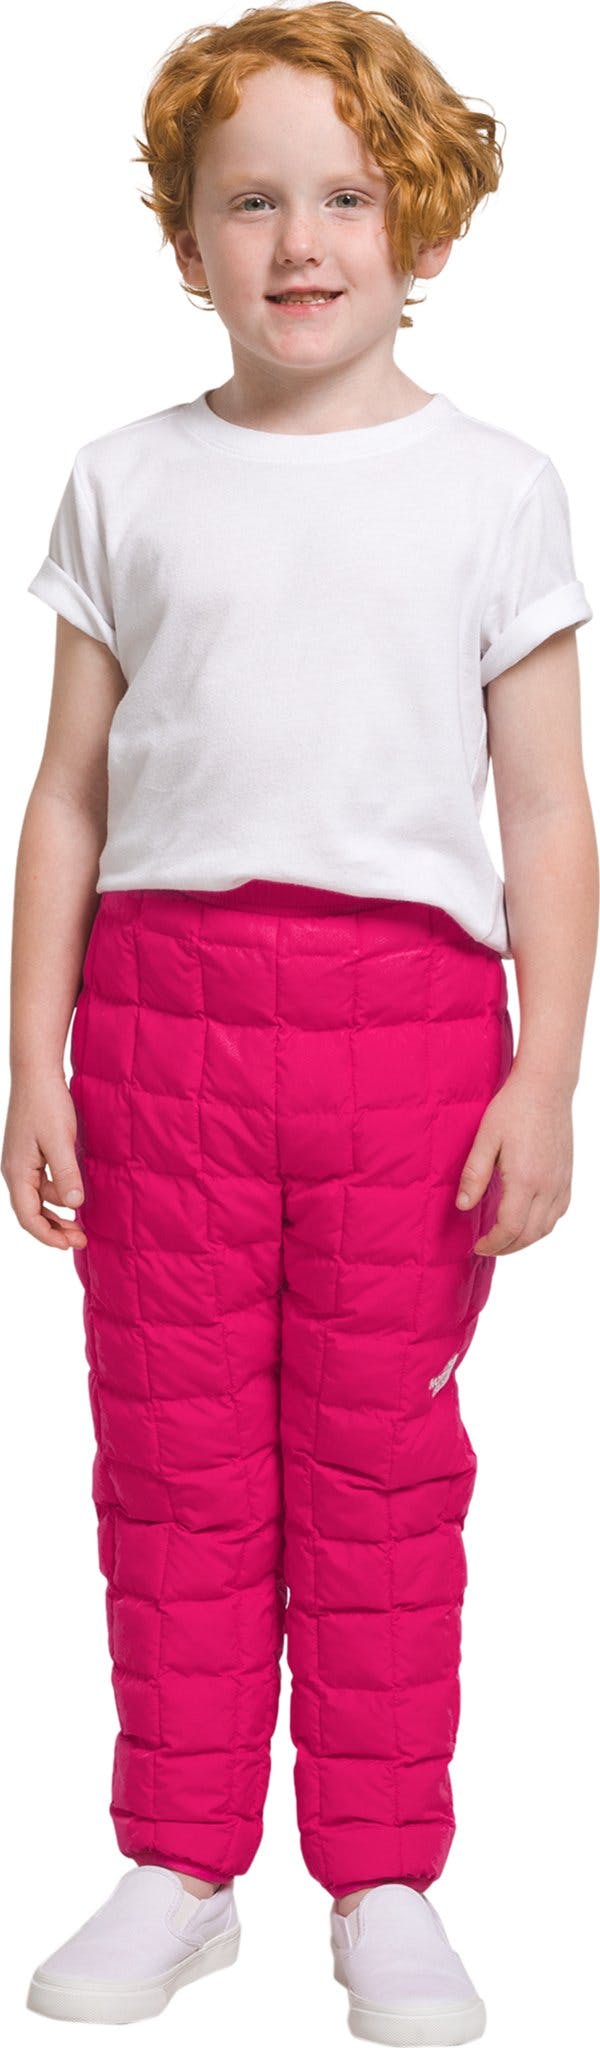 Image de produit pour Pantalon réversible ThermoBall - Enfant